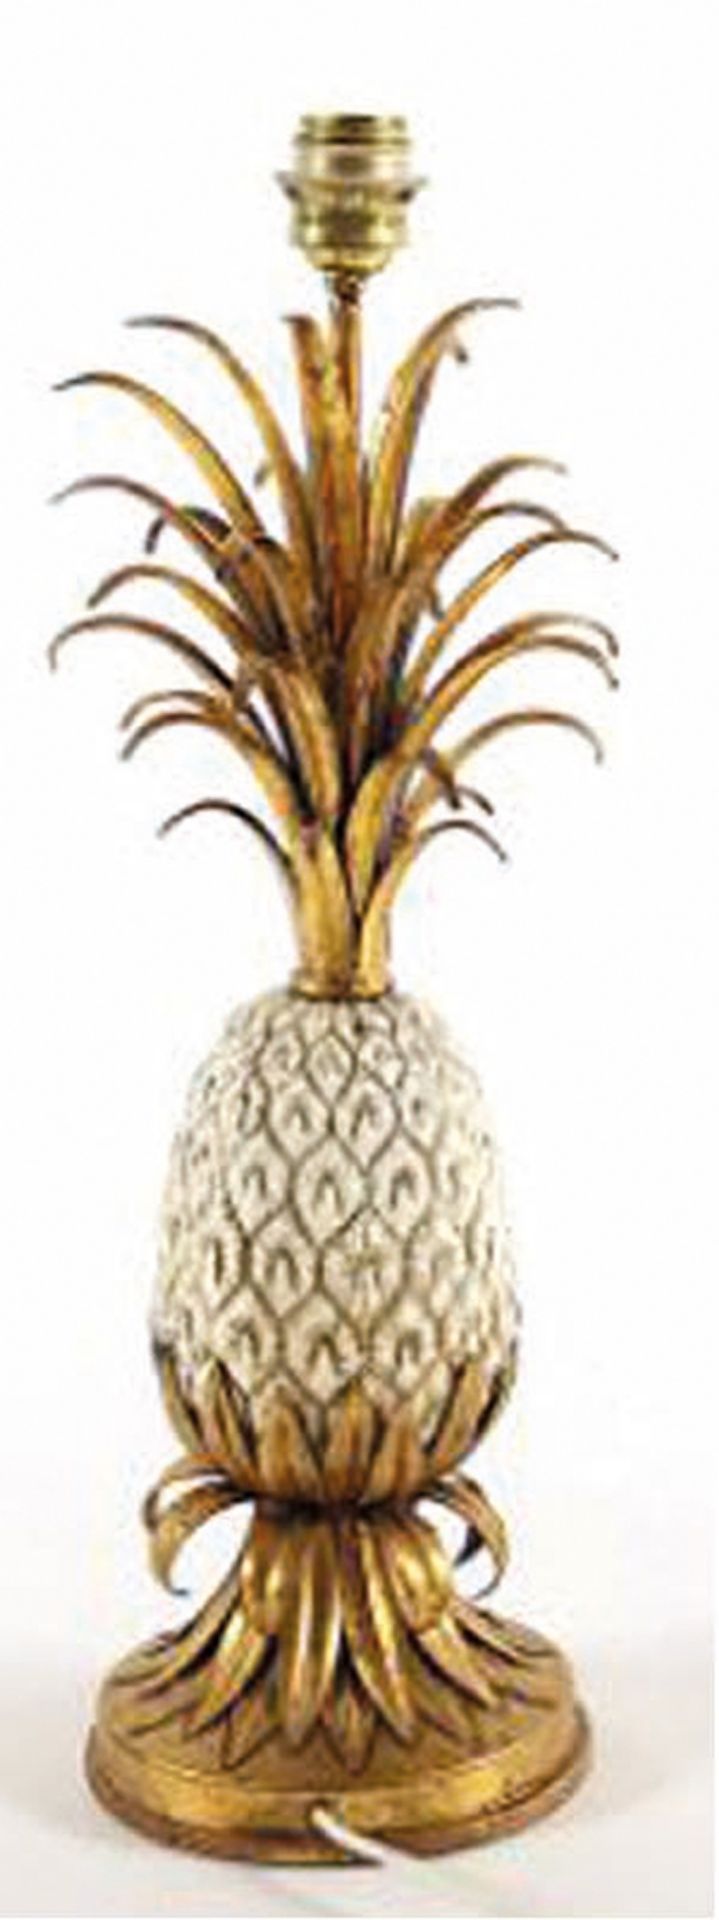 Ananas-Tischlampe, in der Art von Maison Charles, Messing/Metall, vergoldet bzw. weiß lackiert, ein - Image 2 of 2